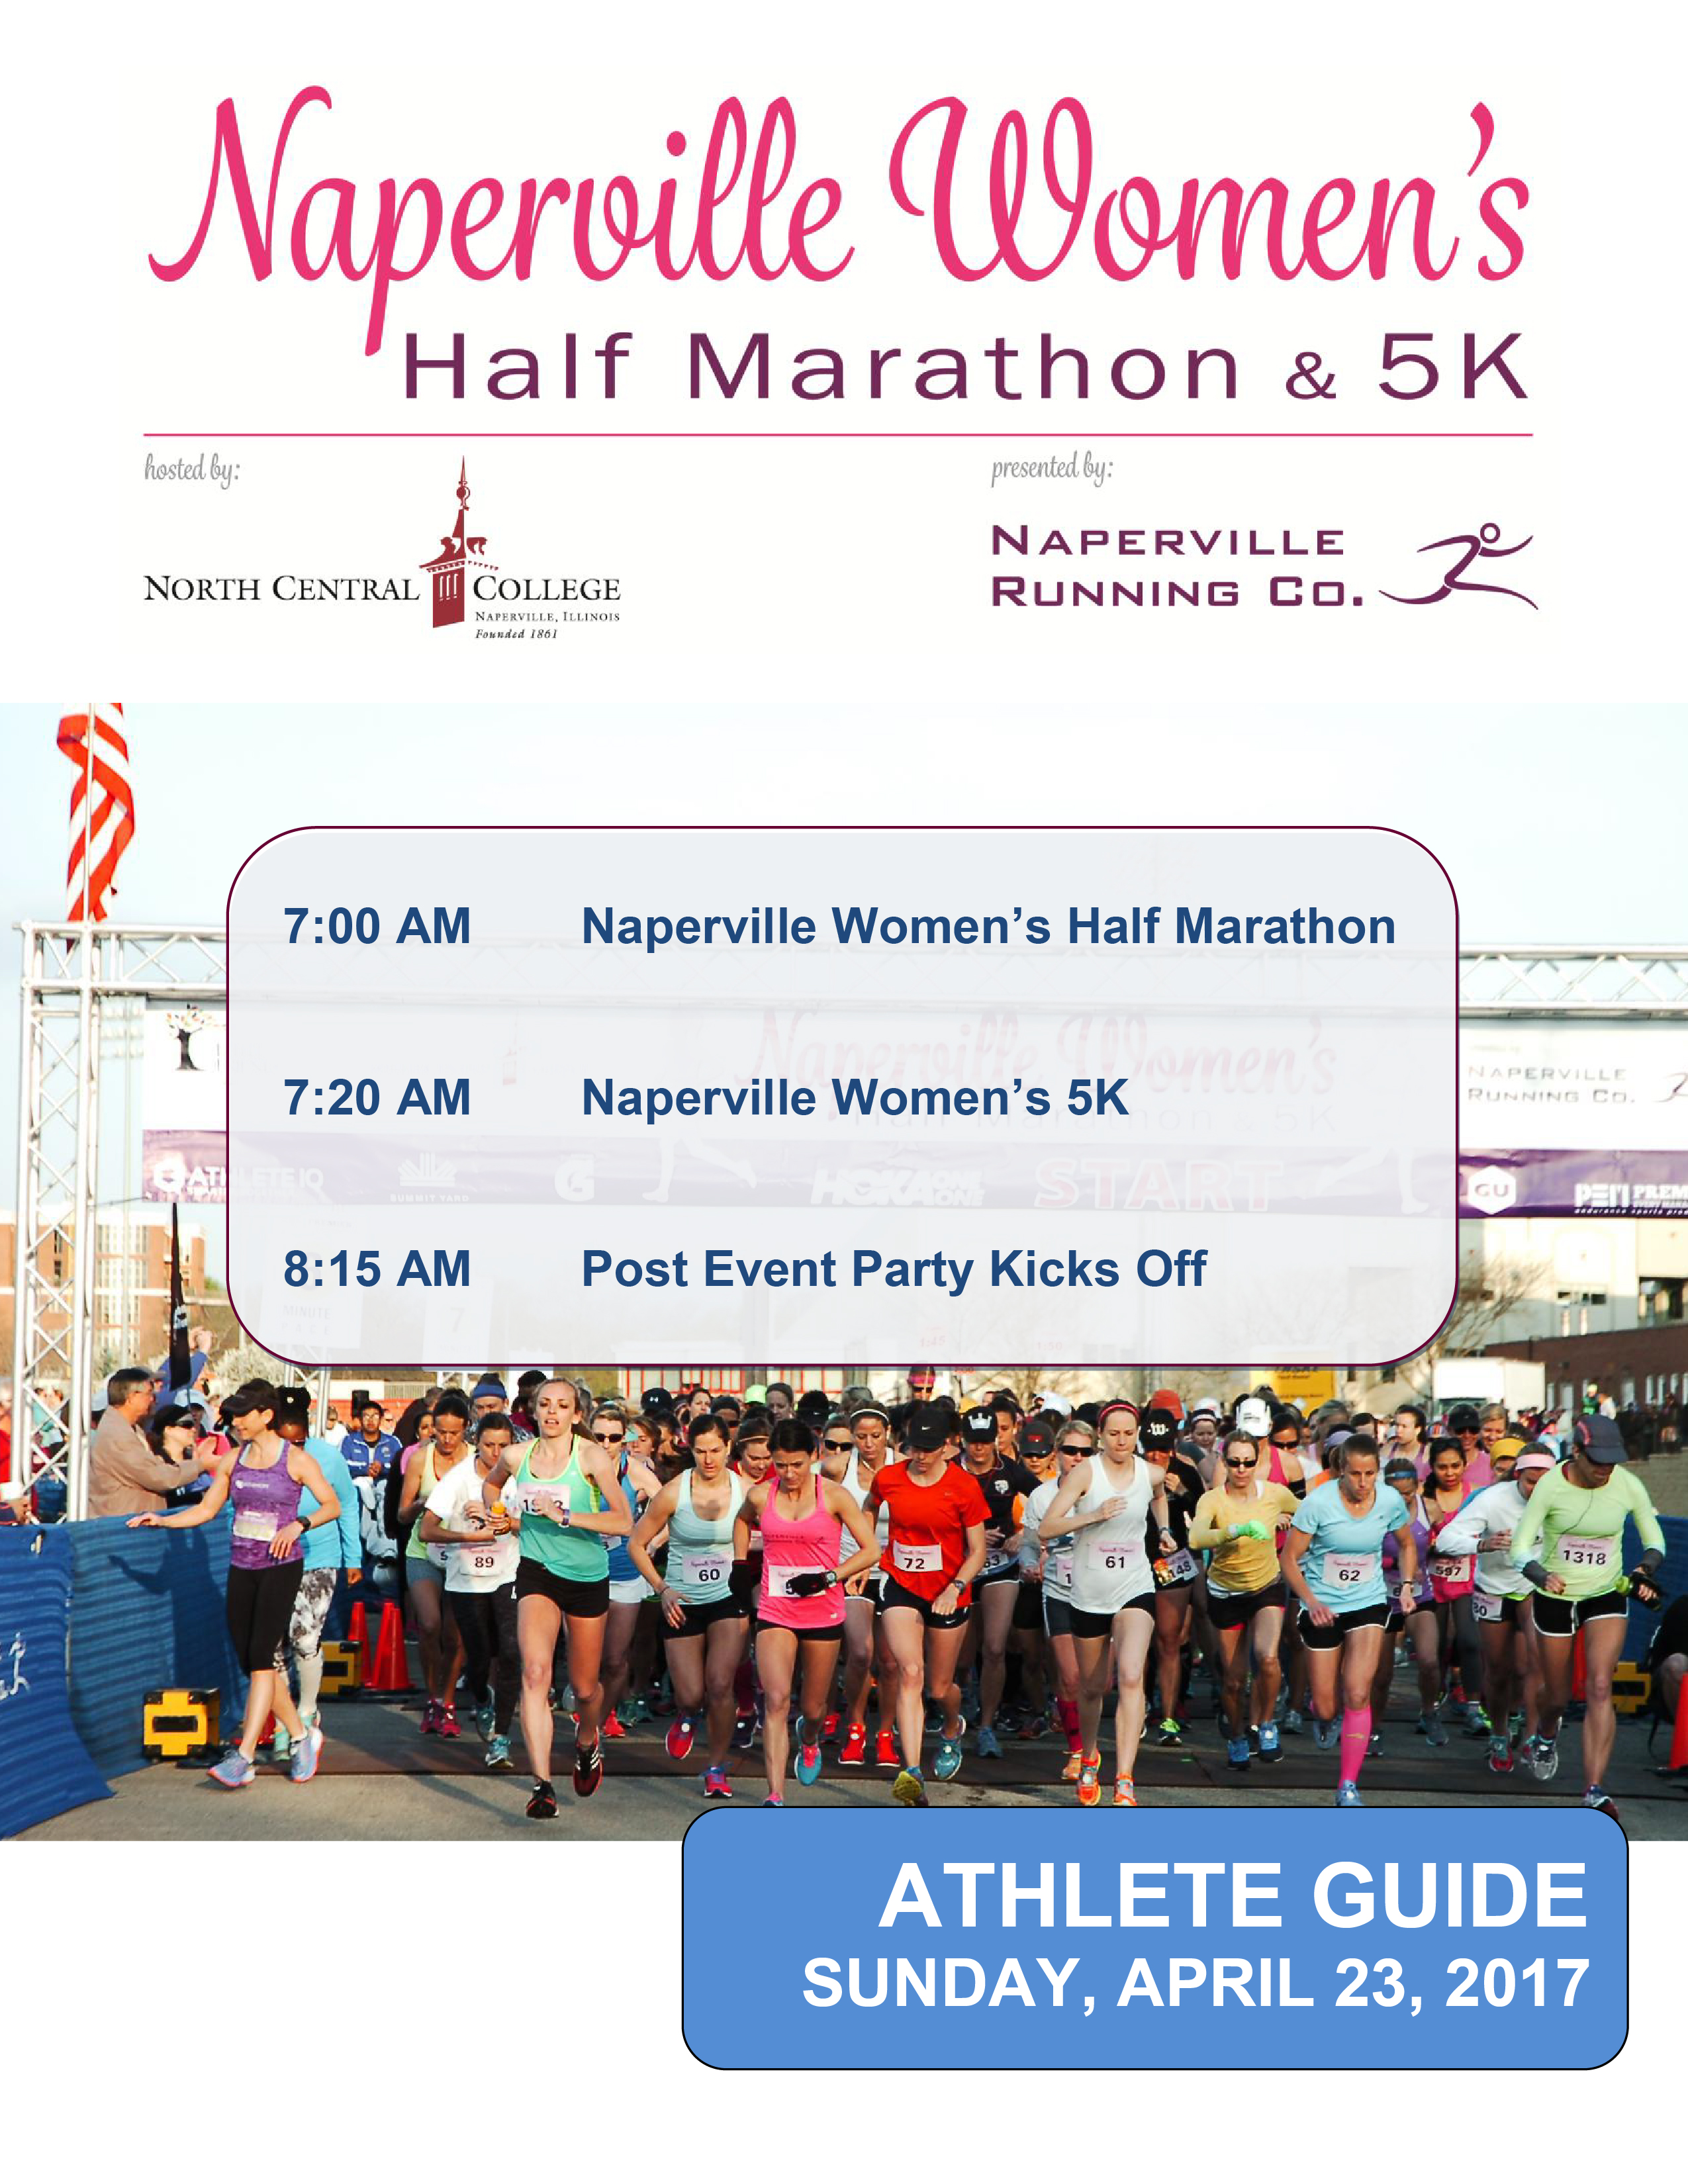 2017 Naperville Women's Half Marathon & 5K Athlete Guide